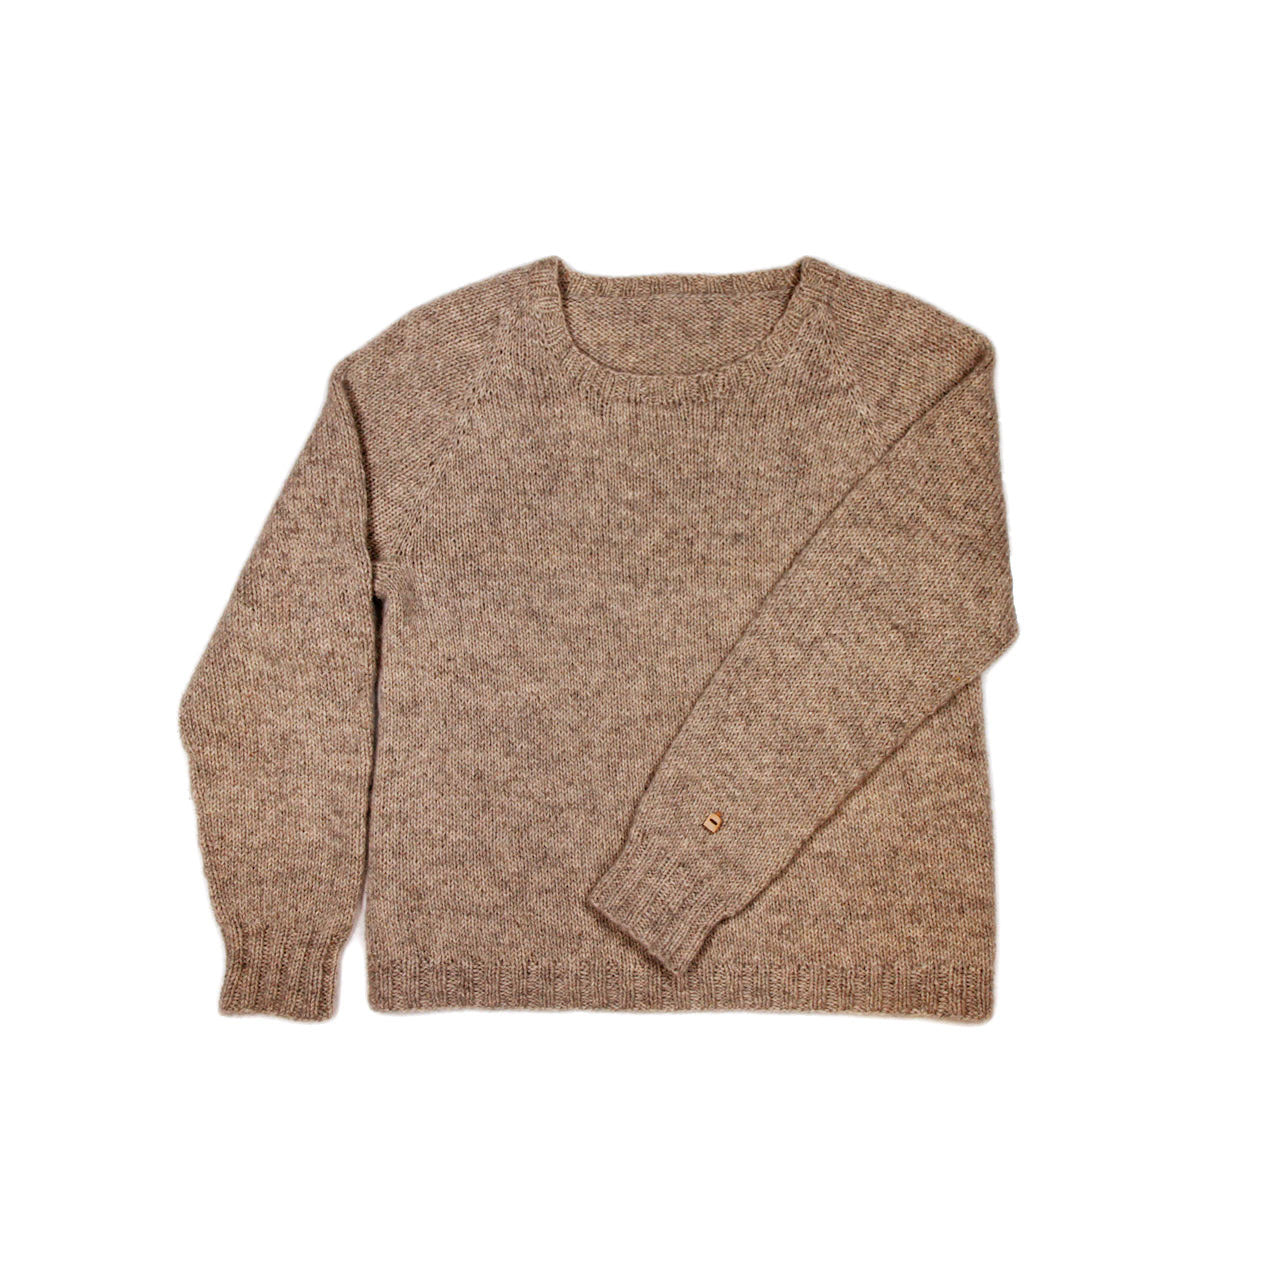 Women's Hiekka Lato Sweater KnitKit